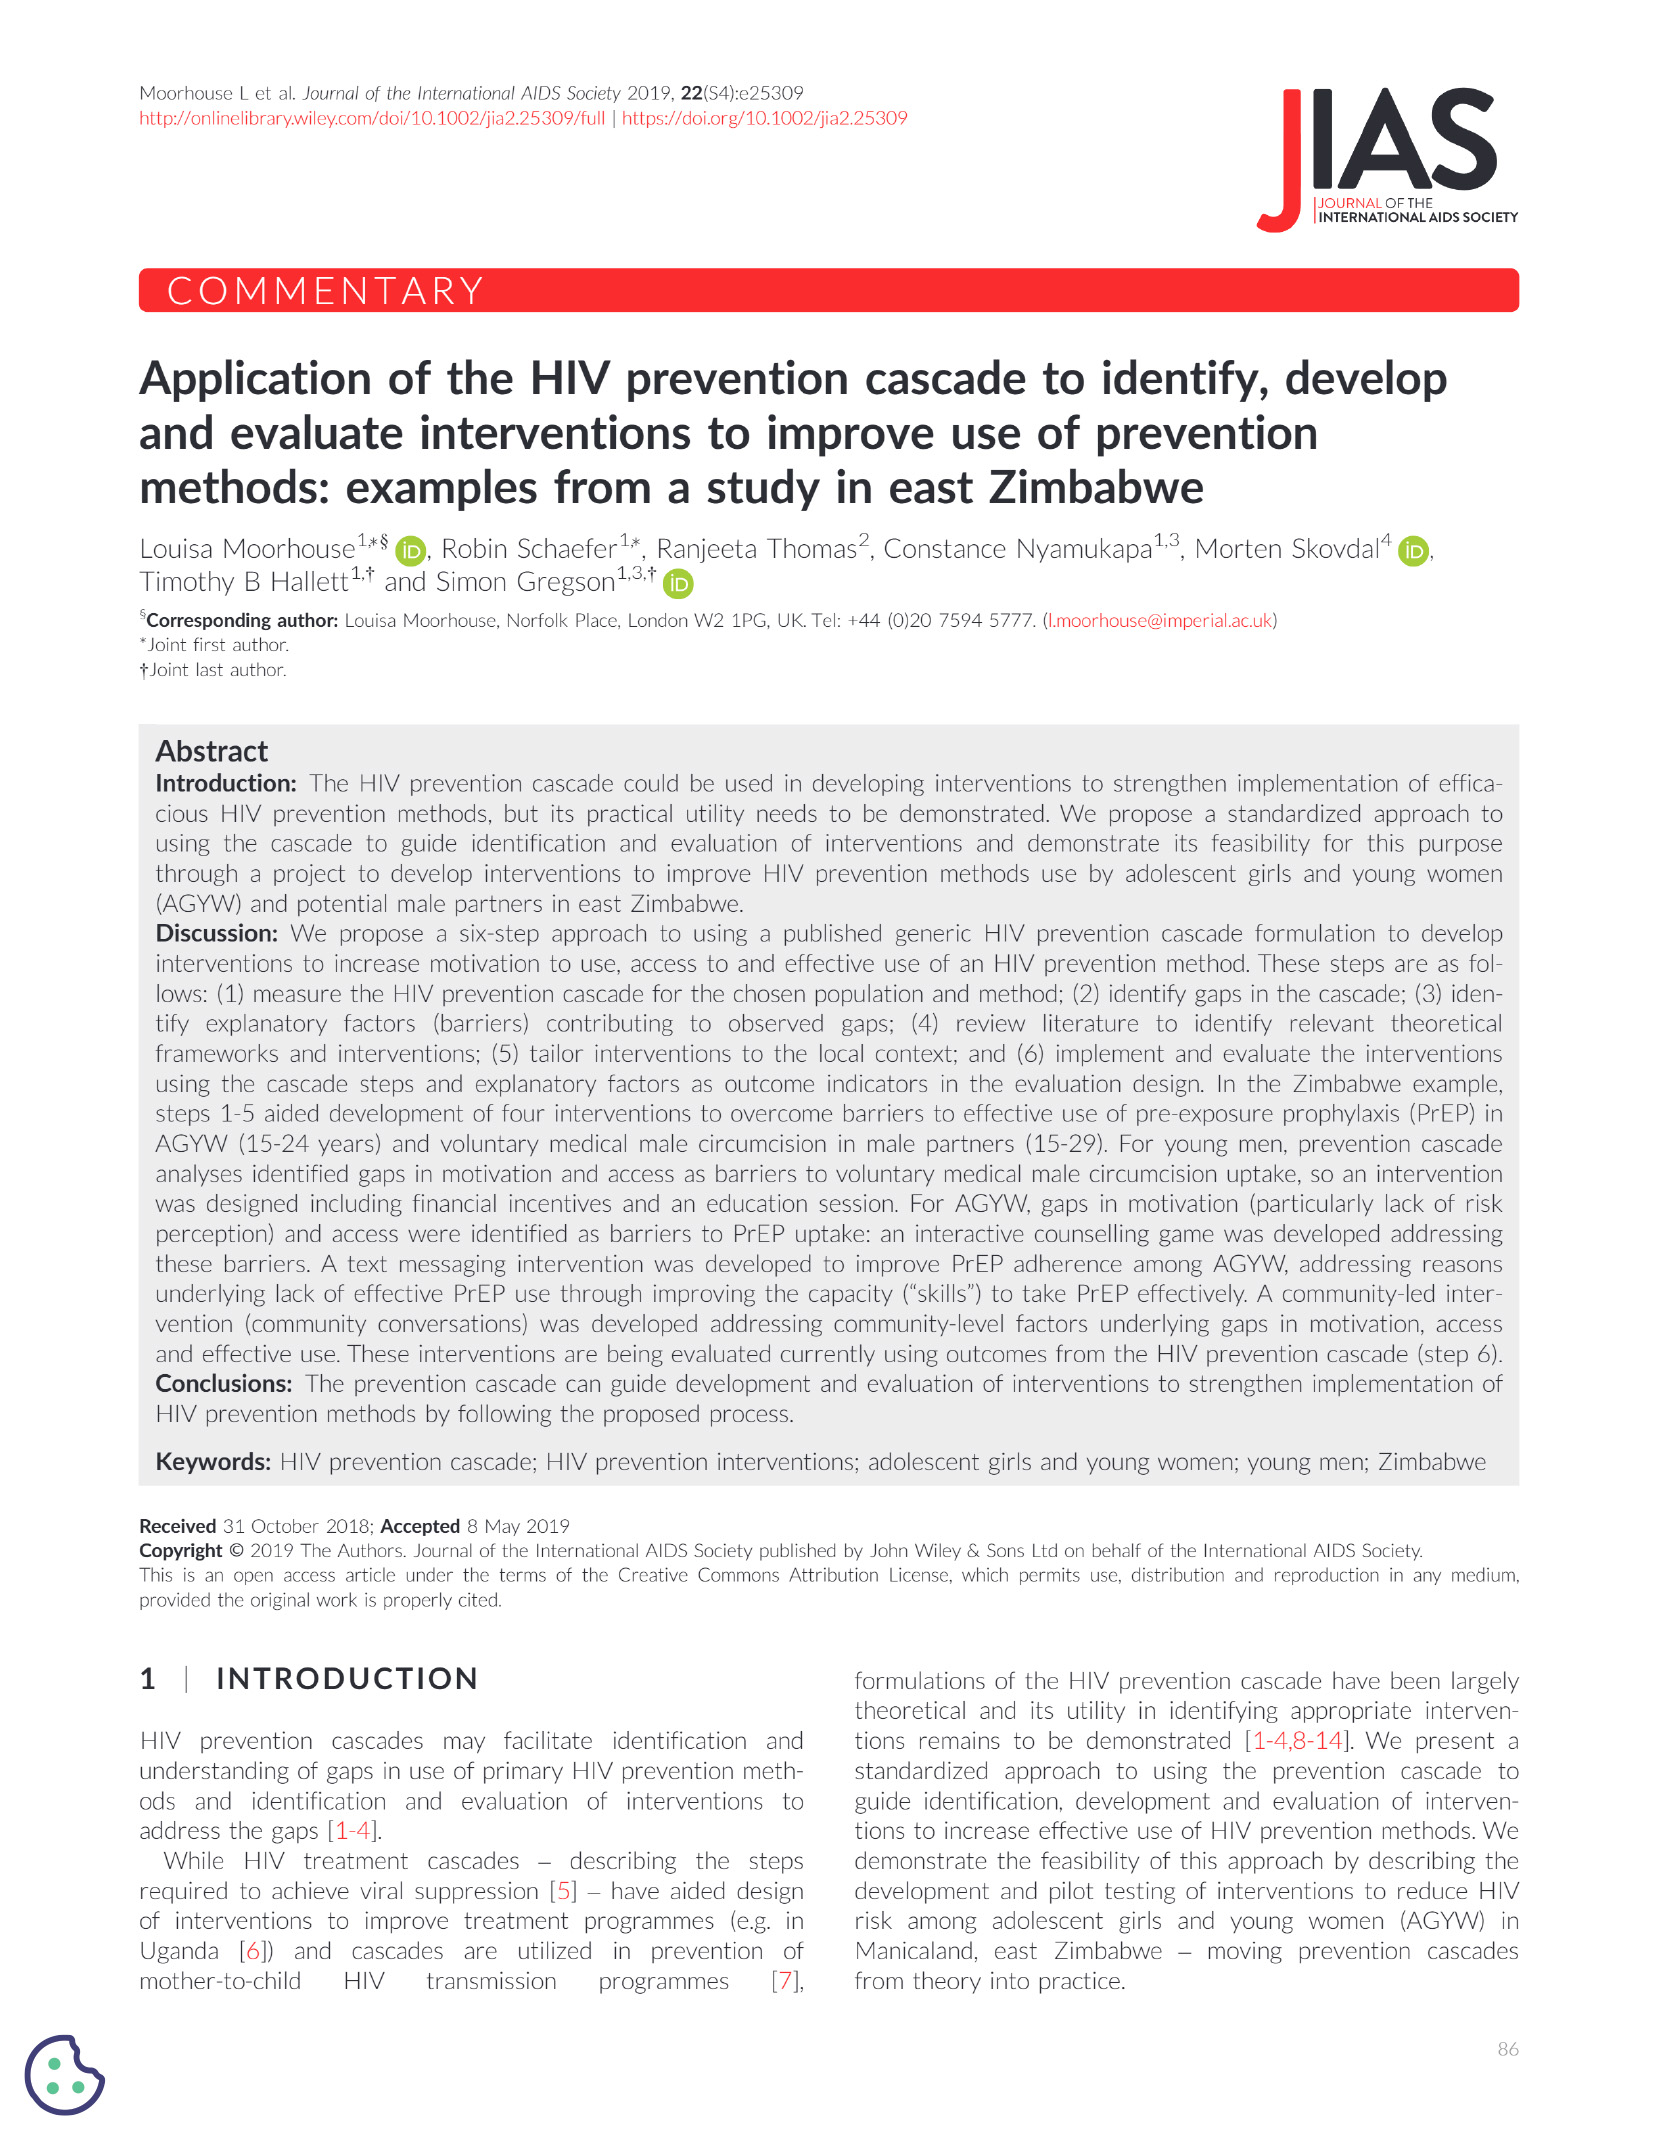 Aplicação da cascata de prevenção do VIH para identificar, desenvolver e avaliar intervenções para melhorar a utilização de métodos de prevenção: Exemplos de um estudo no Leste do Zimbabué - capa